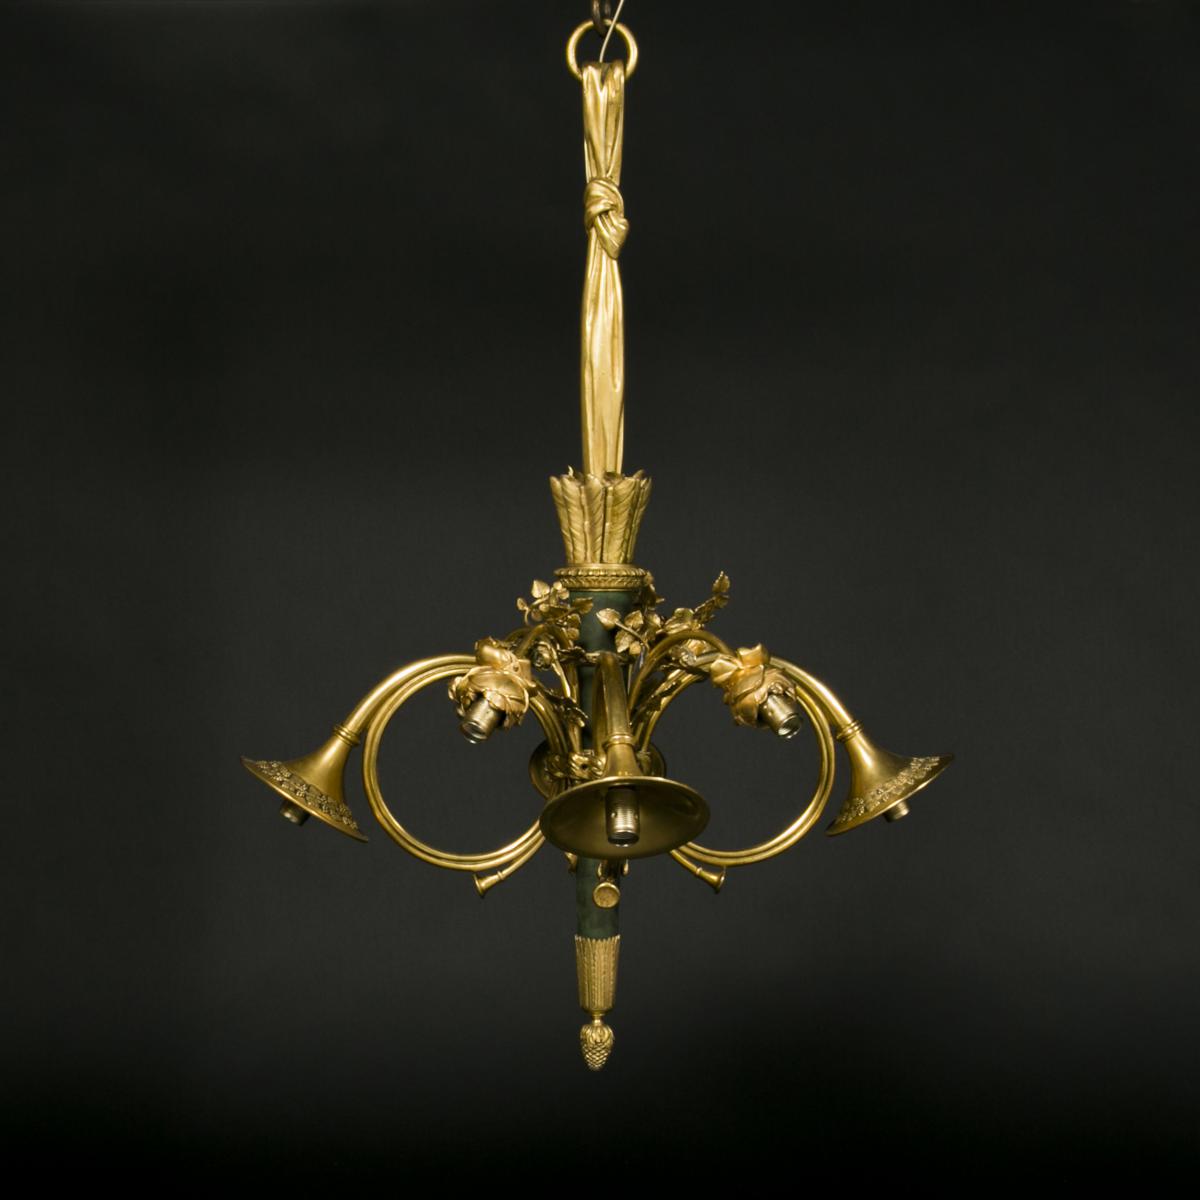 Lustre aux cors de chasse en bronze, XIXe